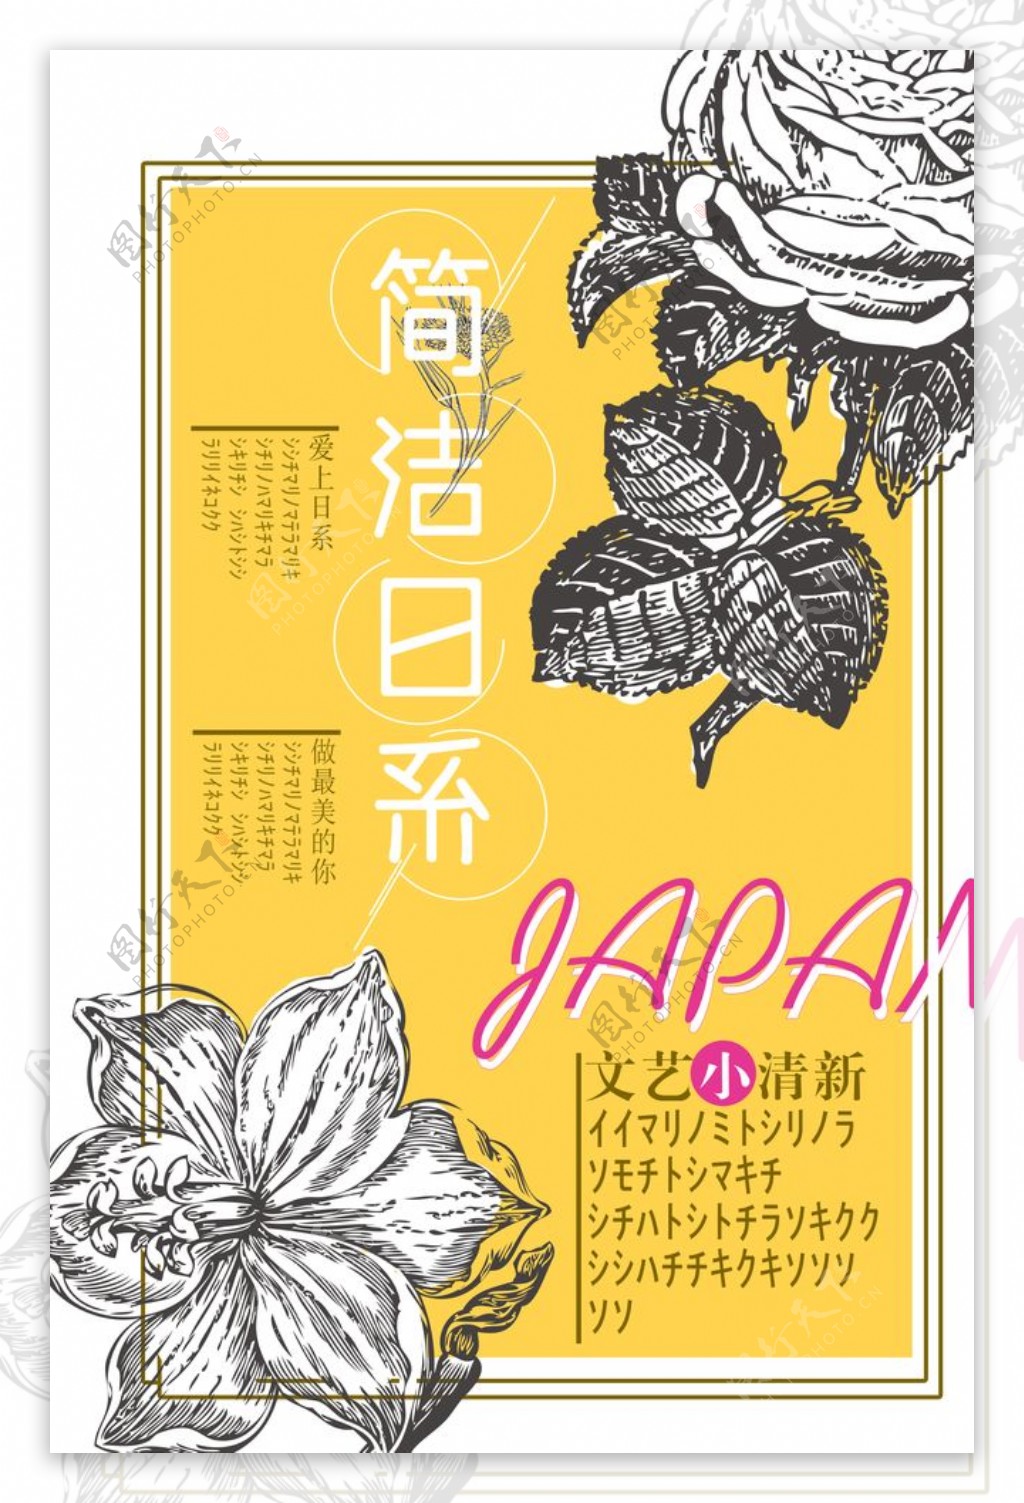 日系文艺小清晰系列海报